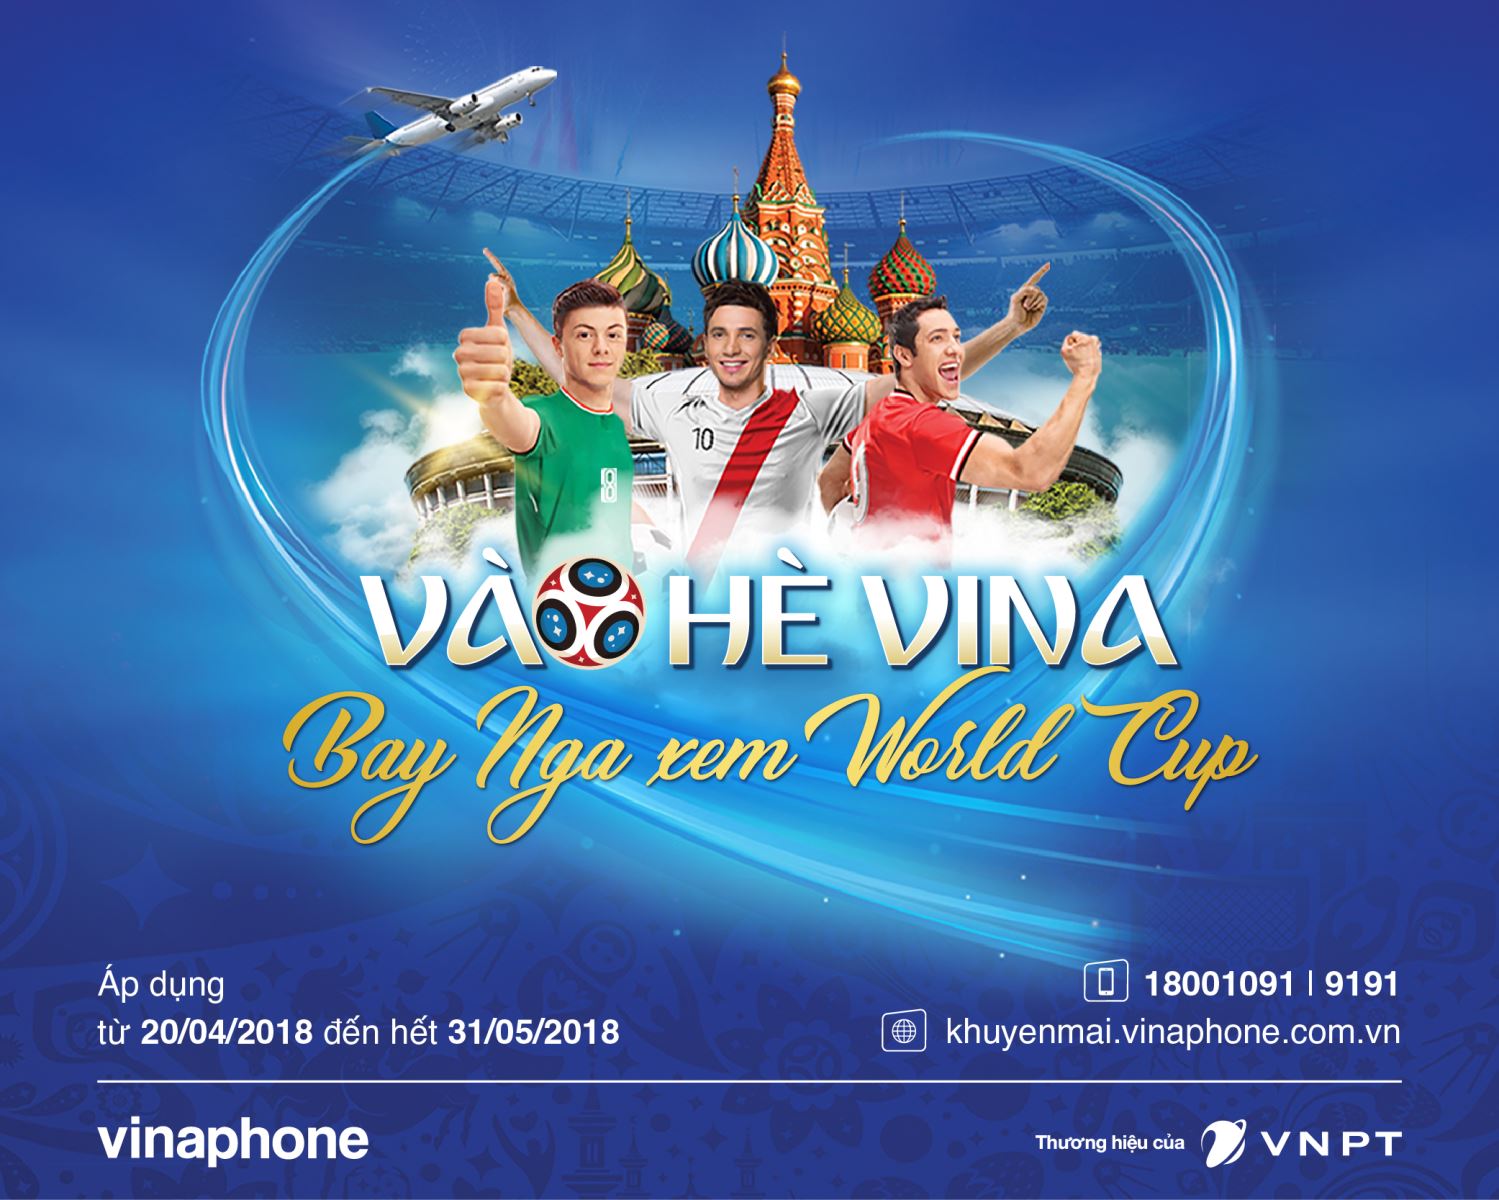 Chỉ với 100.000đ, thuê bao VinaPhone có ngay cơ hội Du lịch Nga xem World Cup